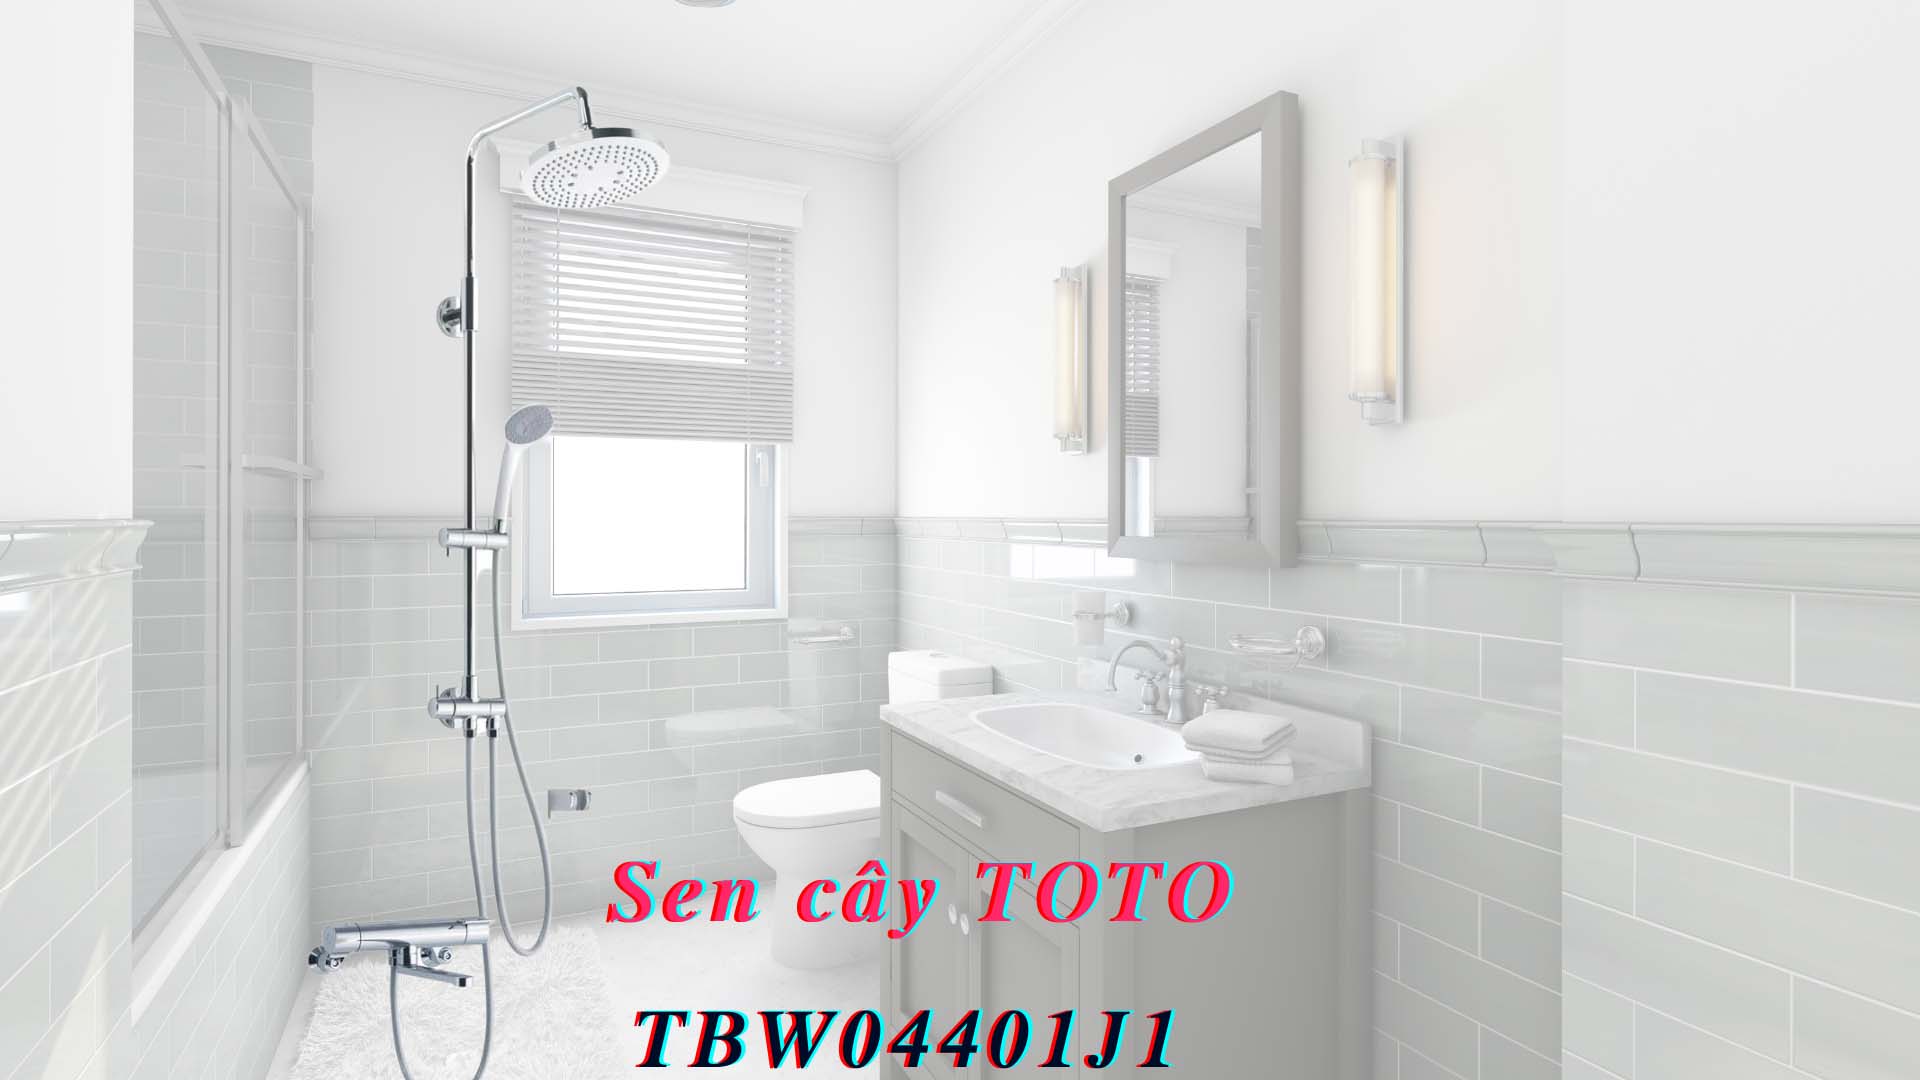 Sen-cay-toto-TBW04401J1